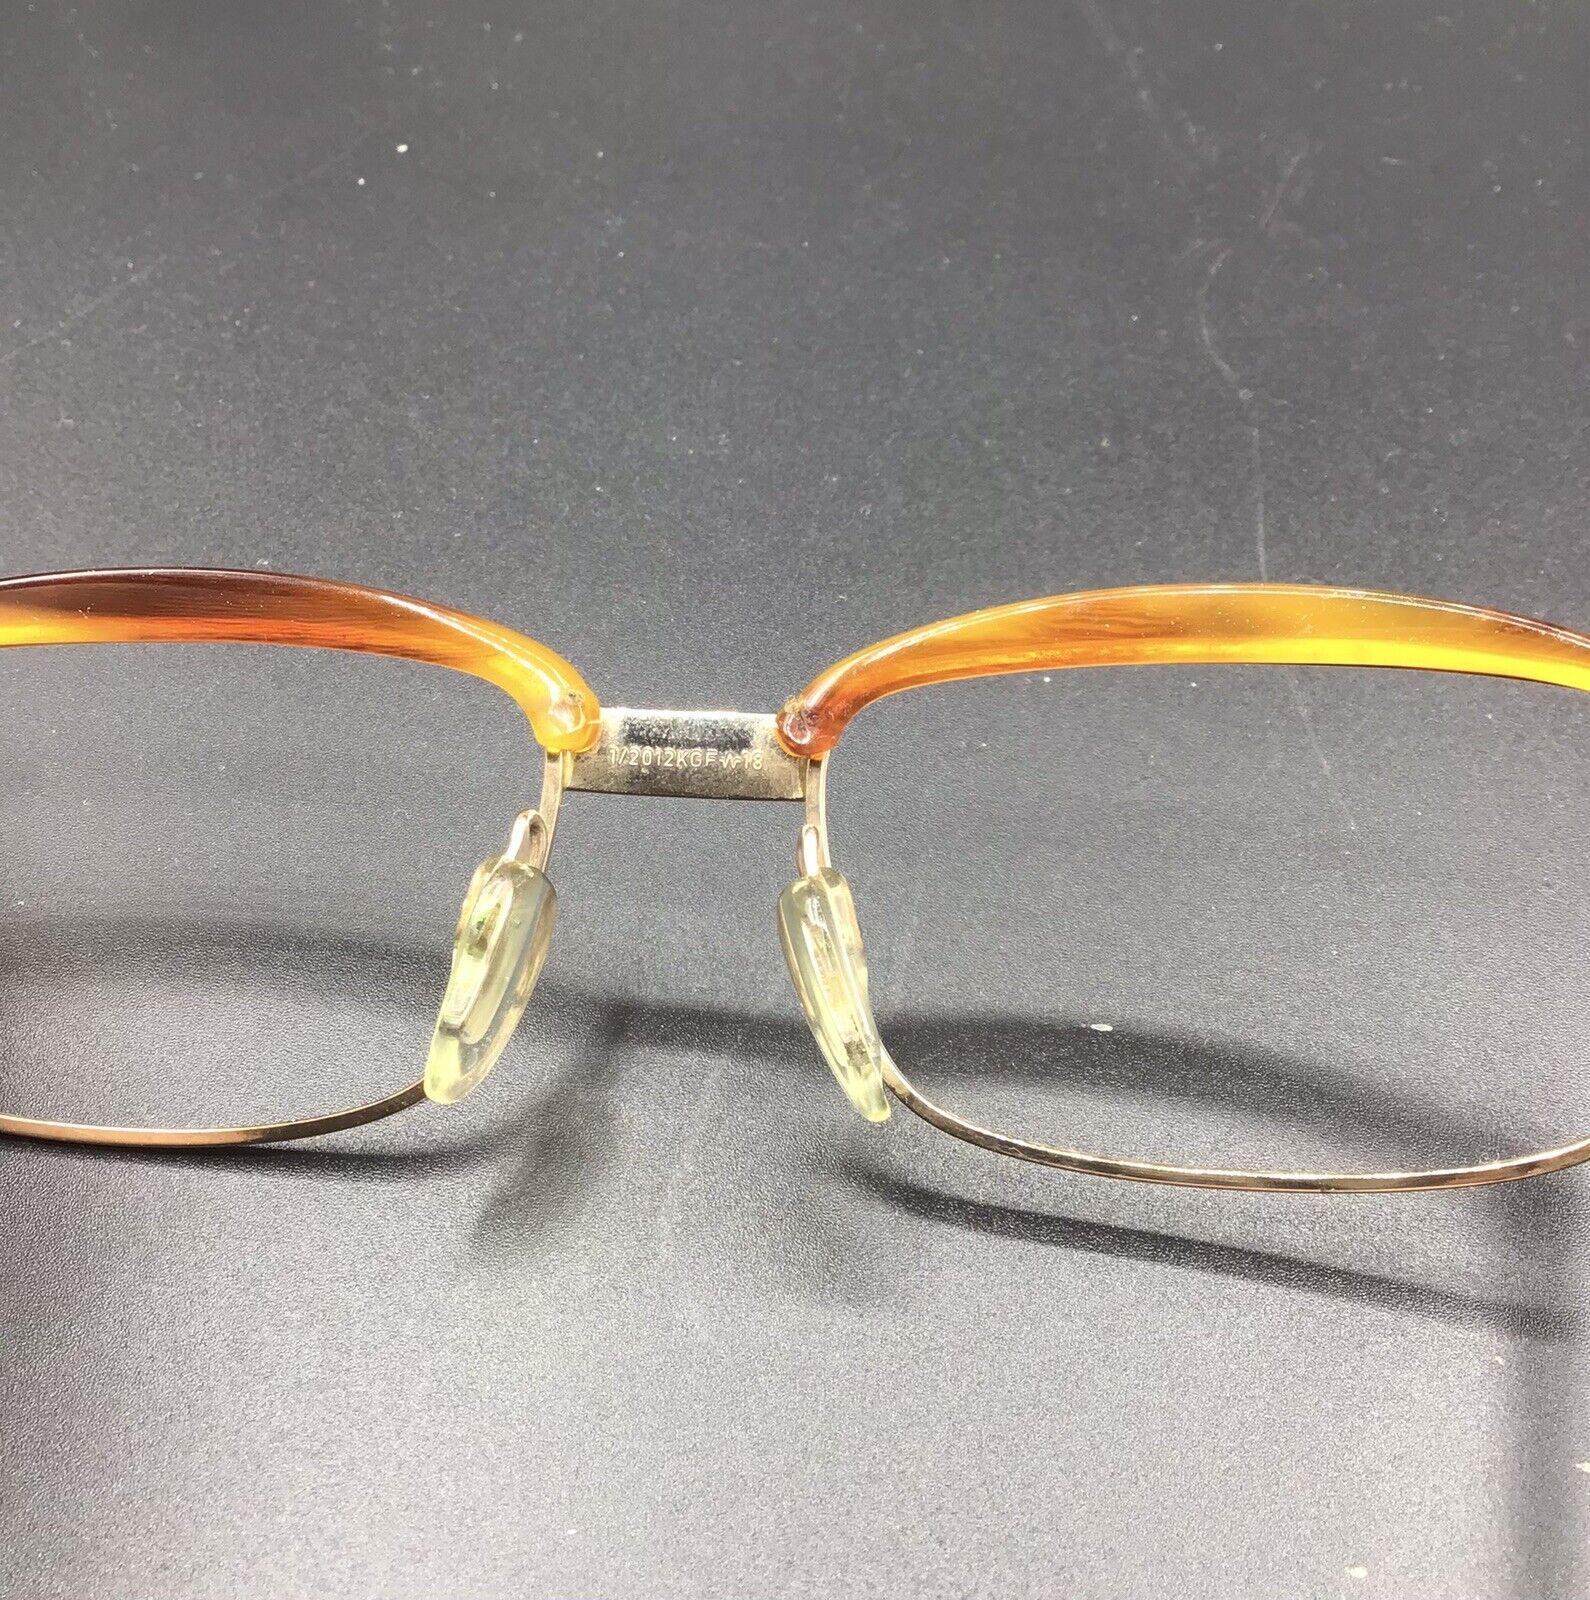 ViennaLine occhiale eyewear brillen frame Austria Sarabande lunettes